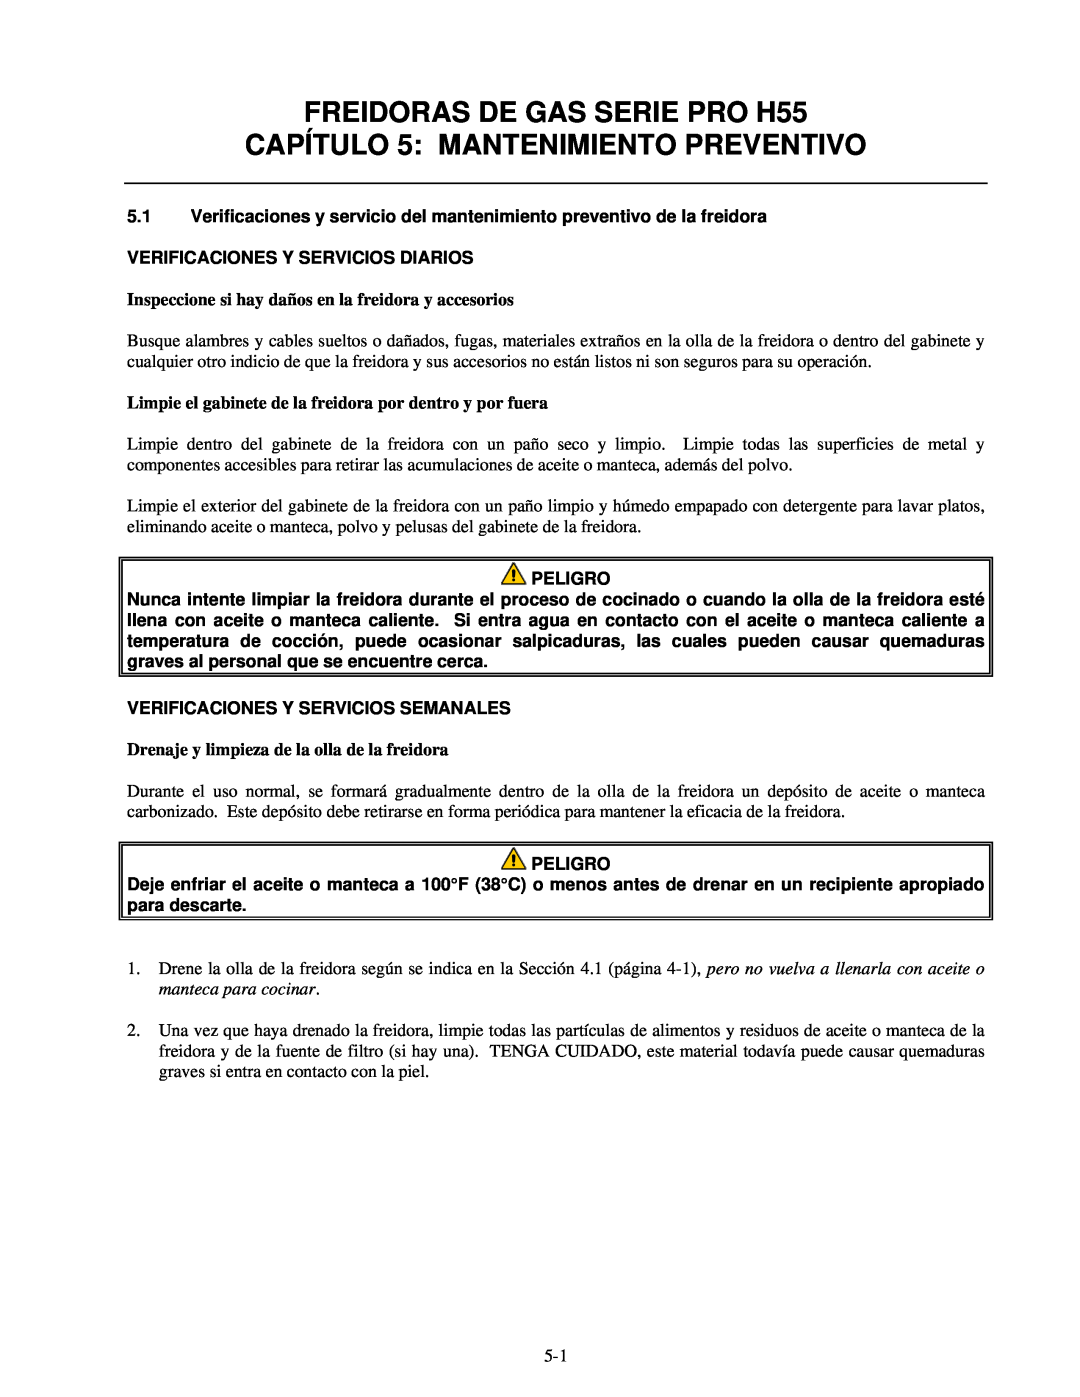 Frymaster manual CAPÍTULO 5 MANTENIMIENTO PREVENTIVO, Verificaciones Y Servicios Diarios, FREIDORAS DE GAS SERIE PRO H55 